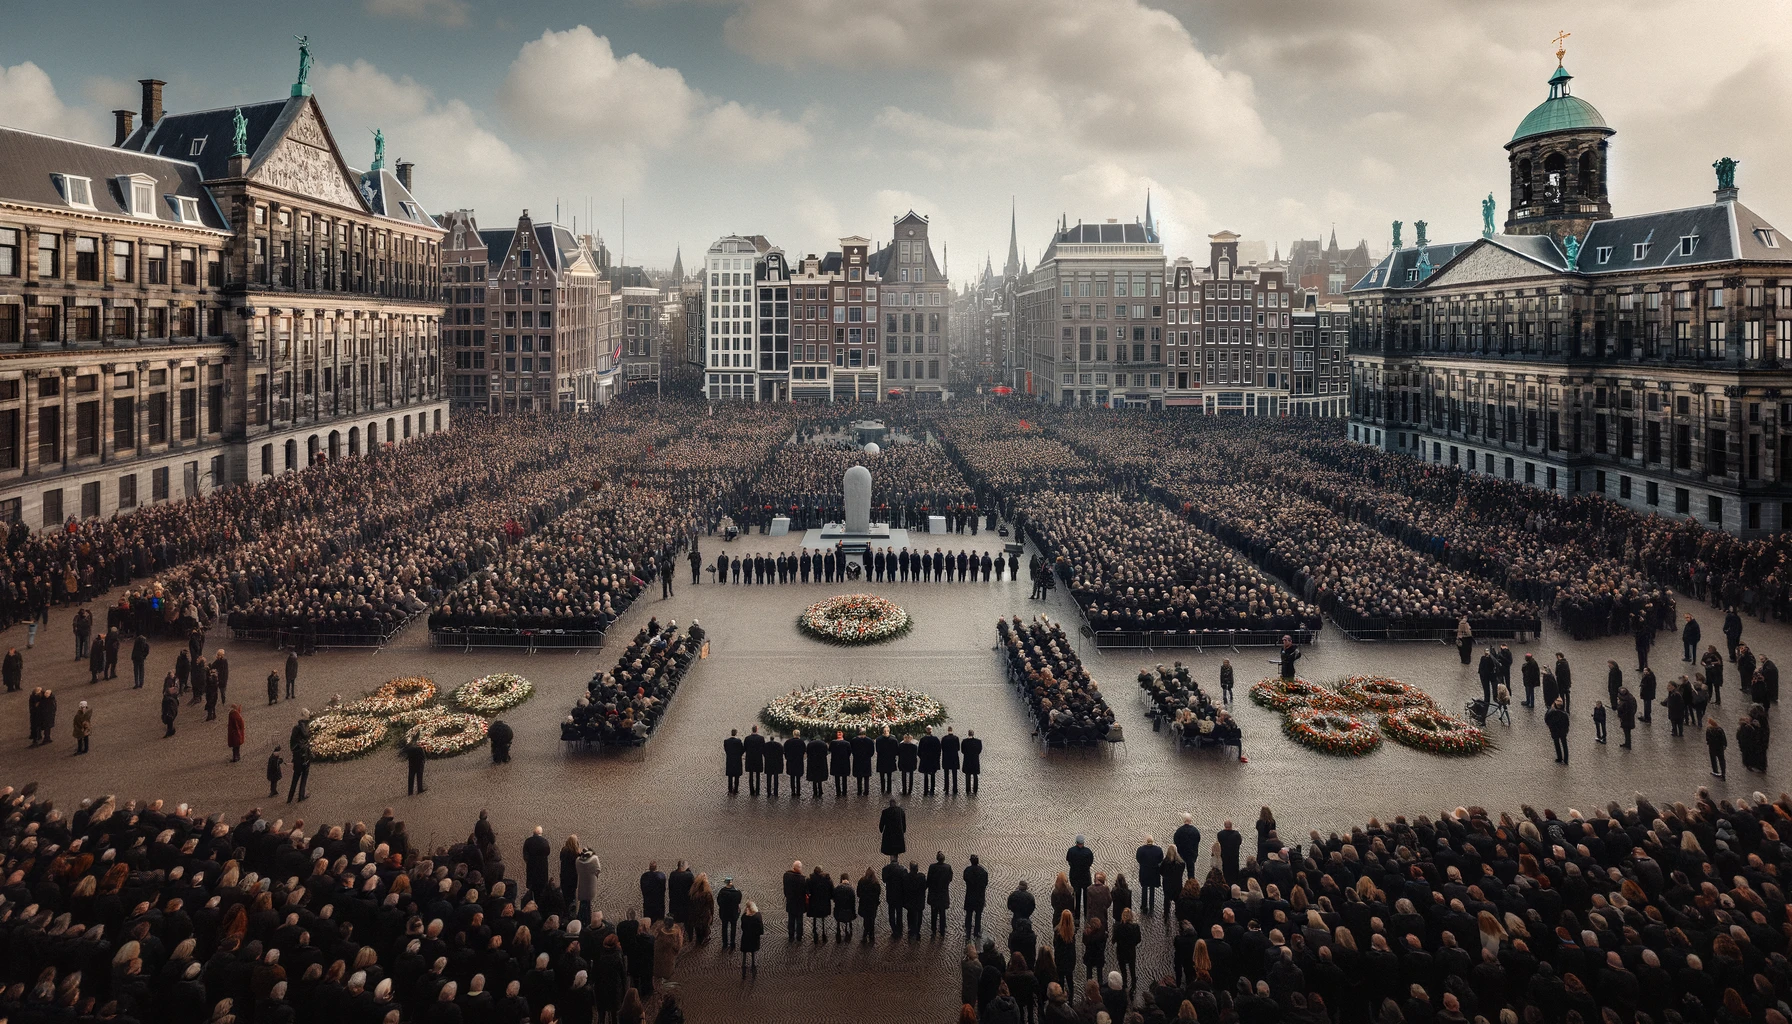  "Amsterdam'da Anma Gününe Yoğun İlgi ve Ek Güvenlik Önlemleri"